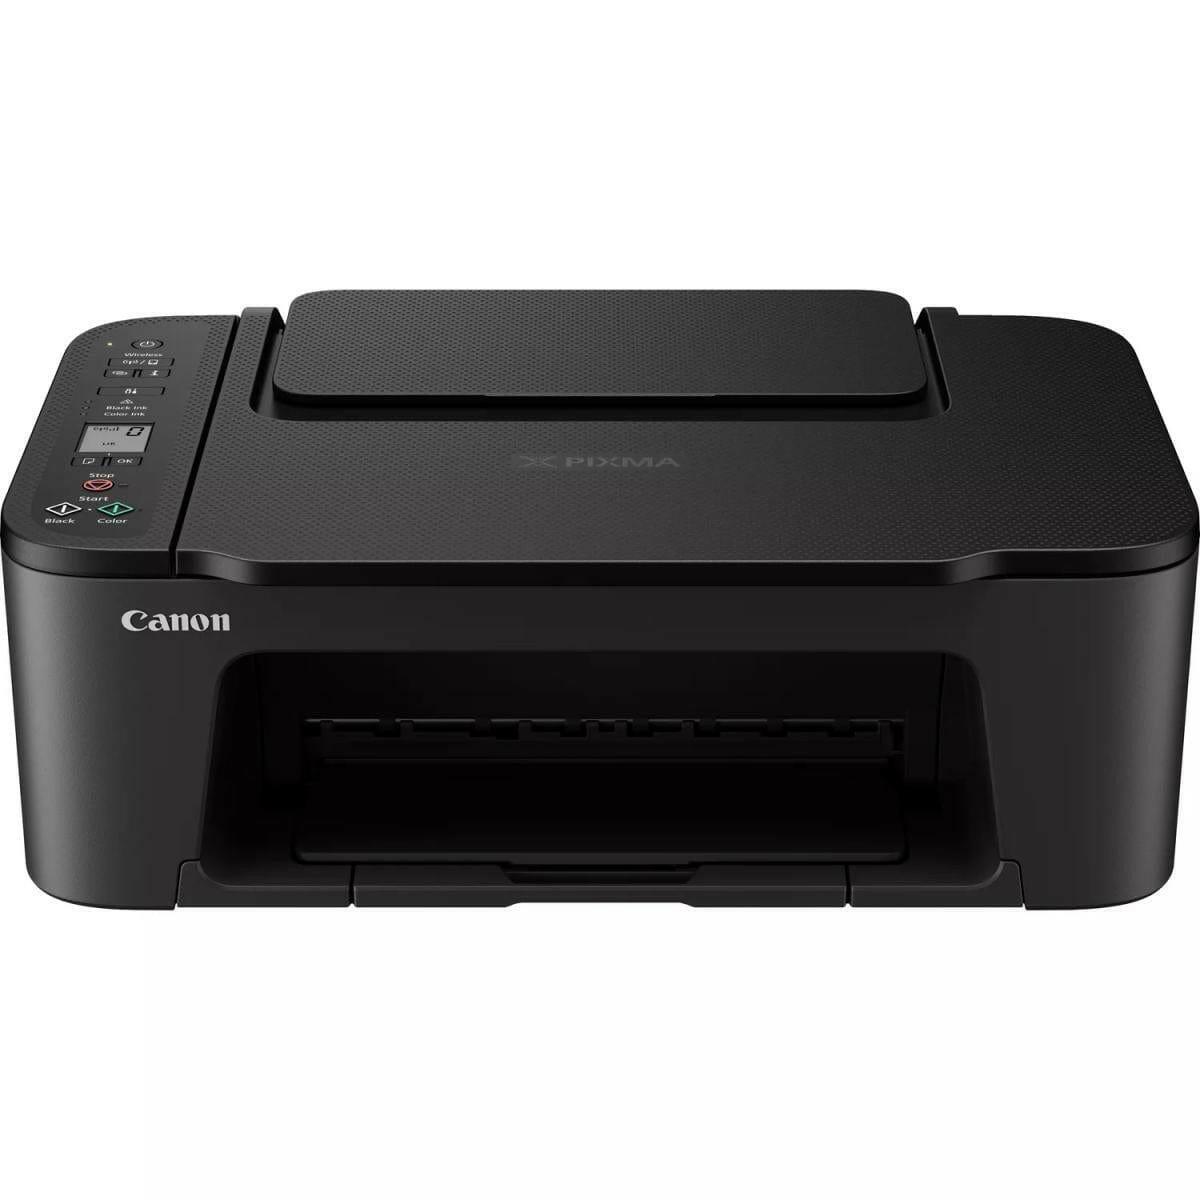 CANON Printers Canon PIXMA TS3440 Wireless Color All-in-One Inkjet Photo Printer